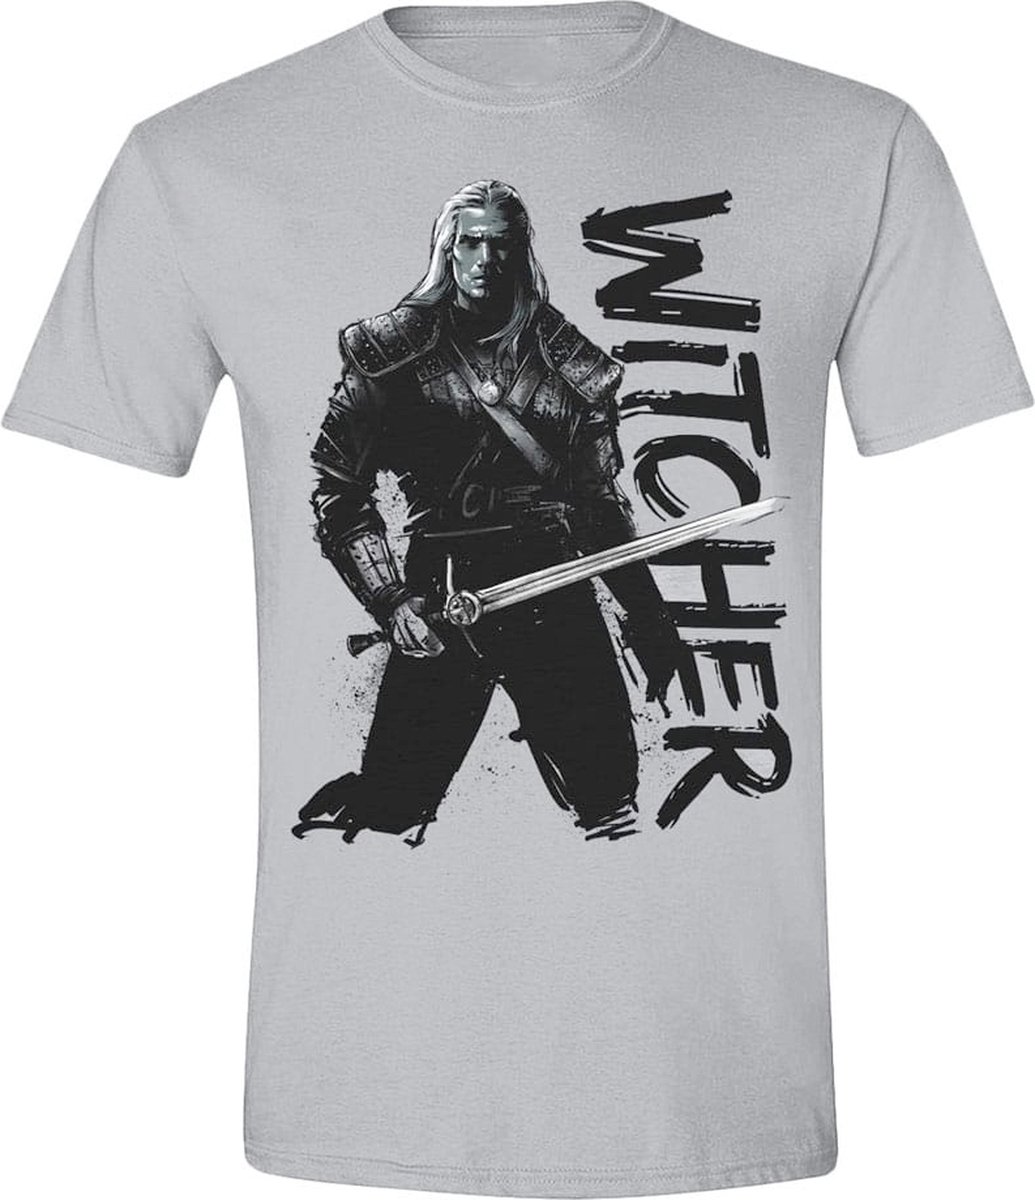 PCMerch The Witcher - Sketch Heren T-shirt - M - Grijs